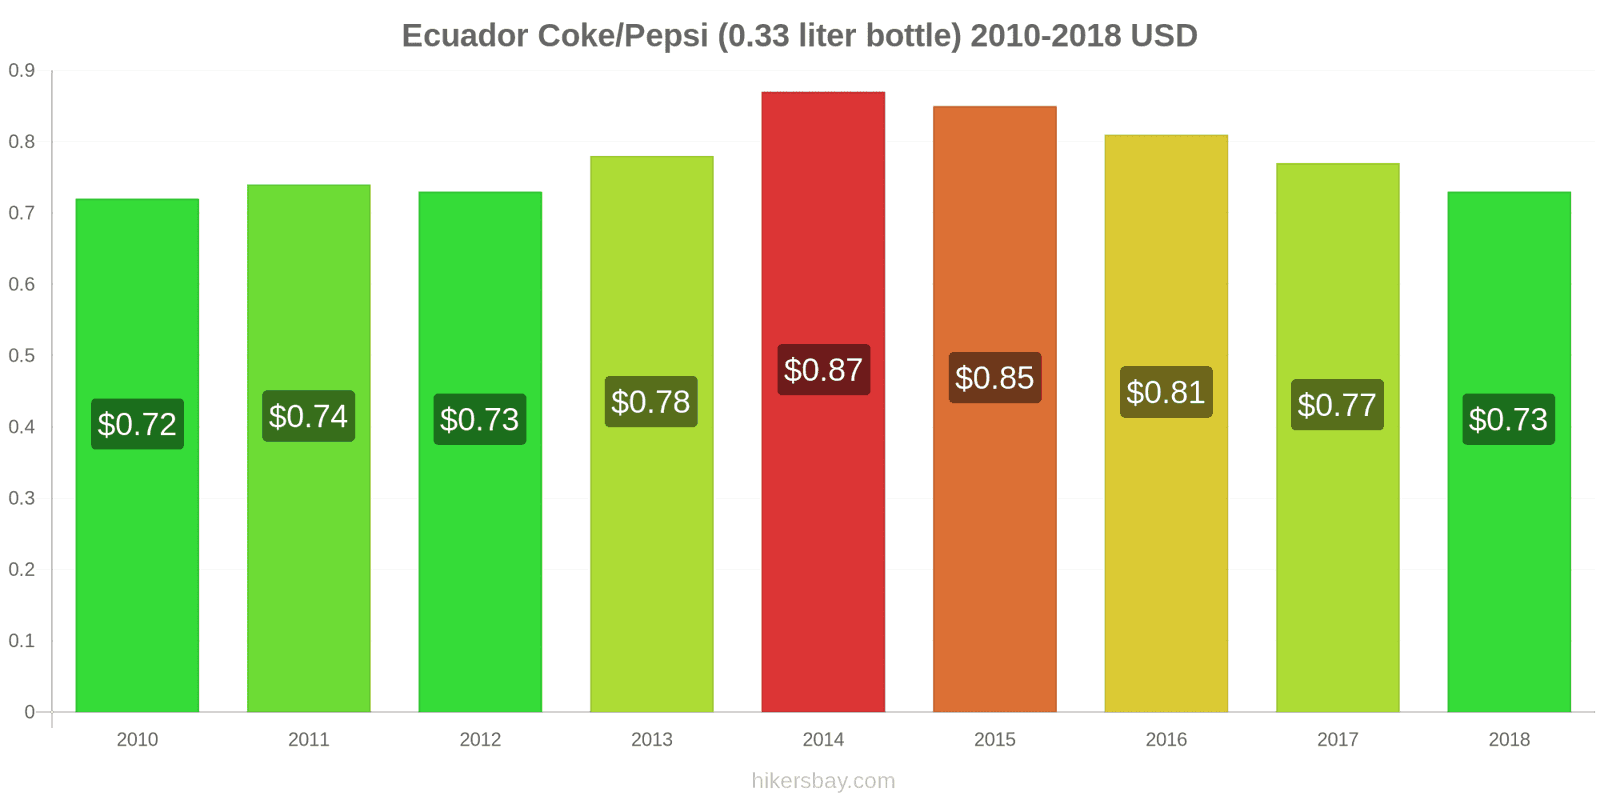 Ecuador price changes Coke/Pepsi (0.33 liter bottle) hikersbay.com